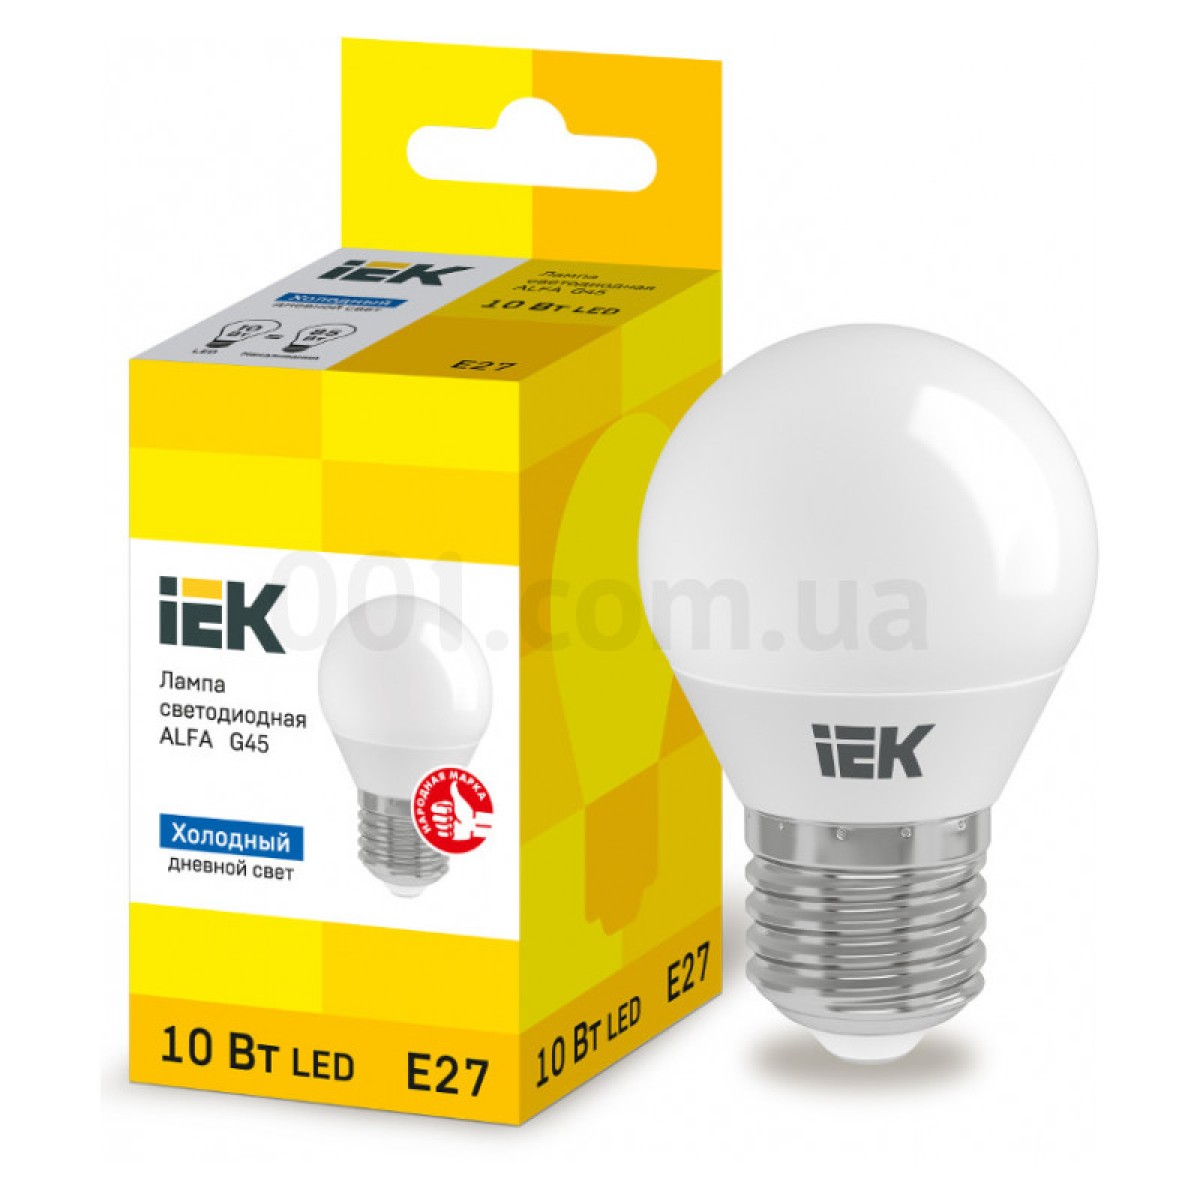 Світлодіодна лампа LED ALFA G45 (куля) 10 Вт 230В 6500К E27, IEK 98_98.jpg - фото 1